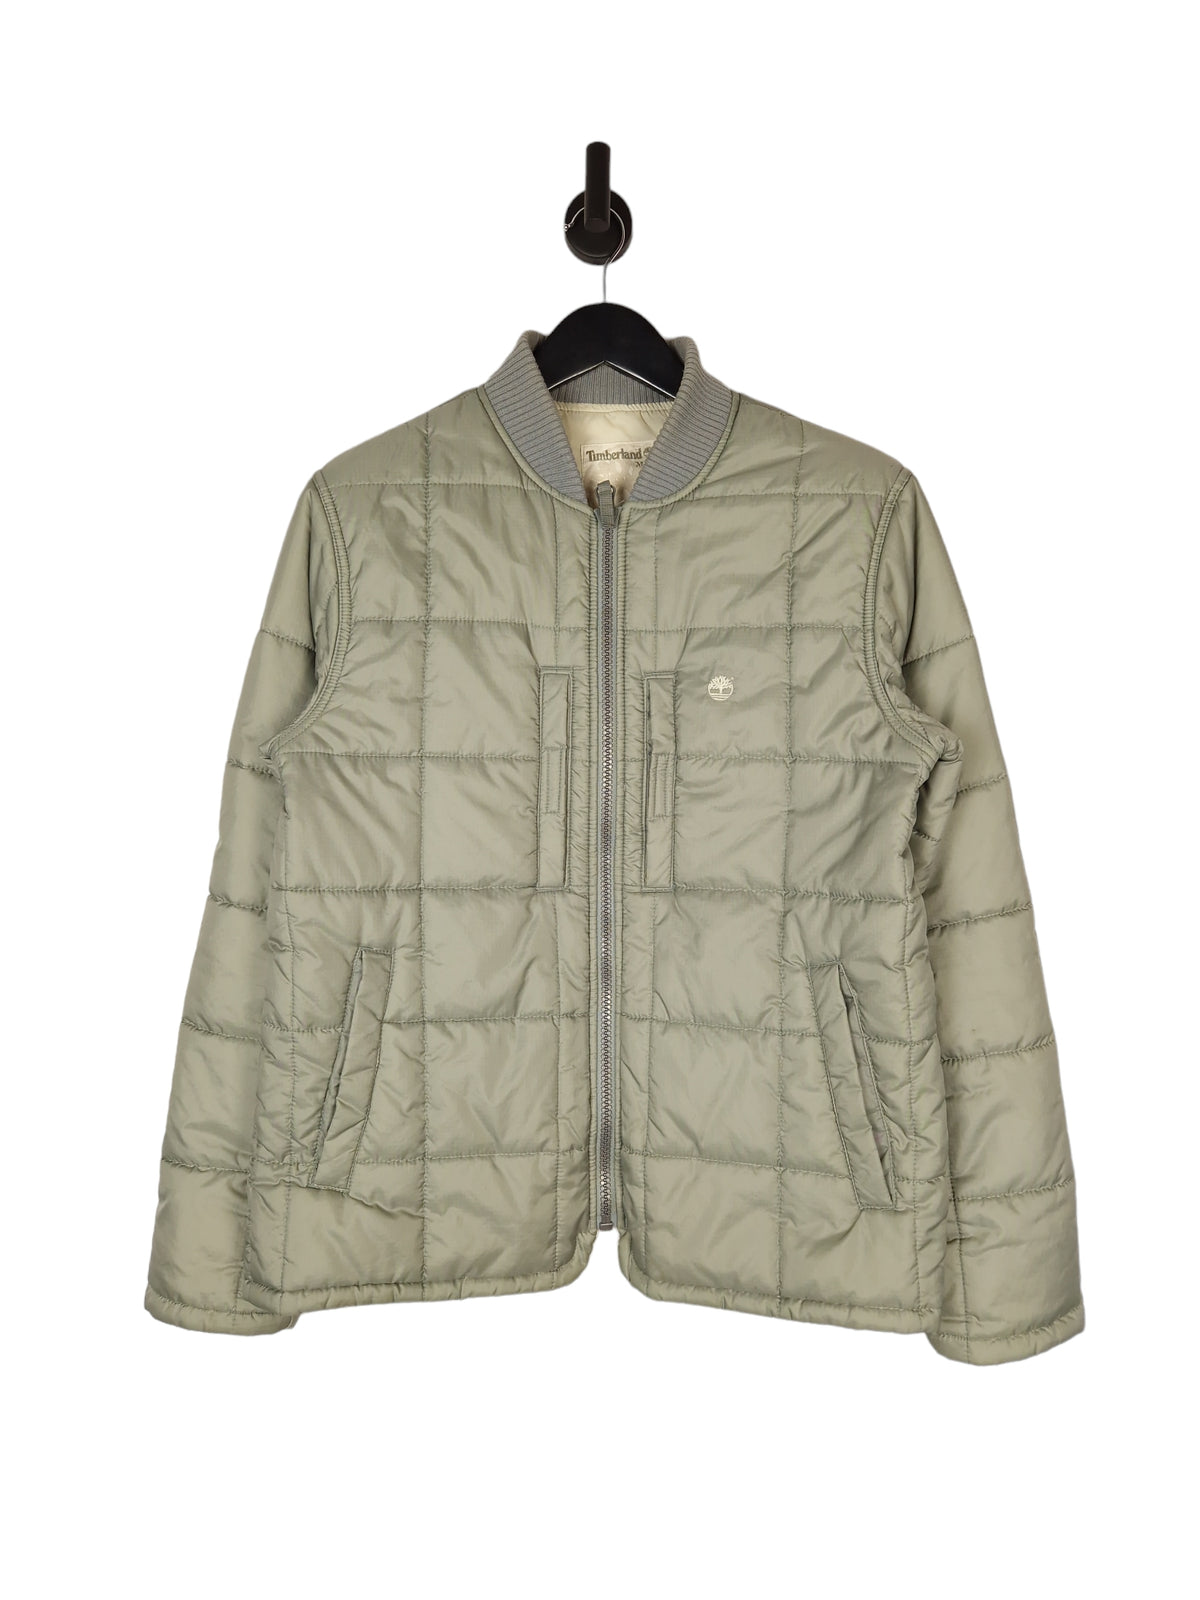 Timberland Padded Jacket - Size Medium